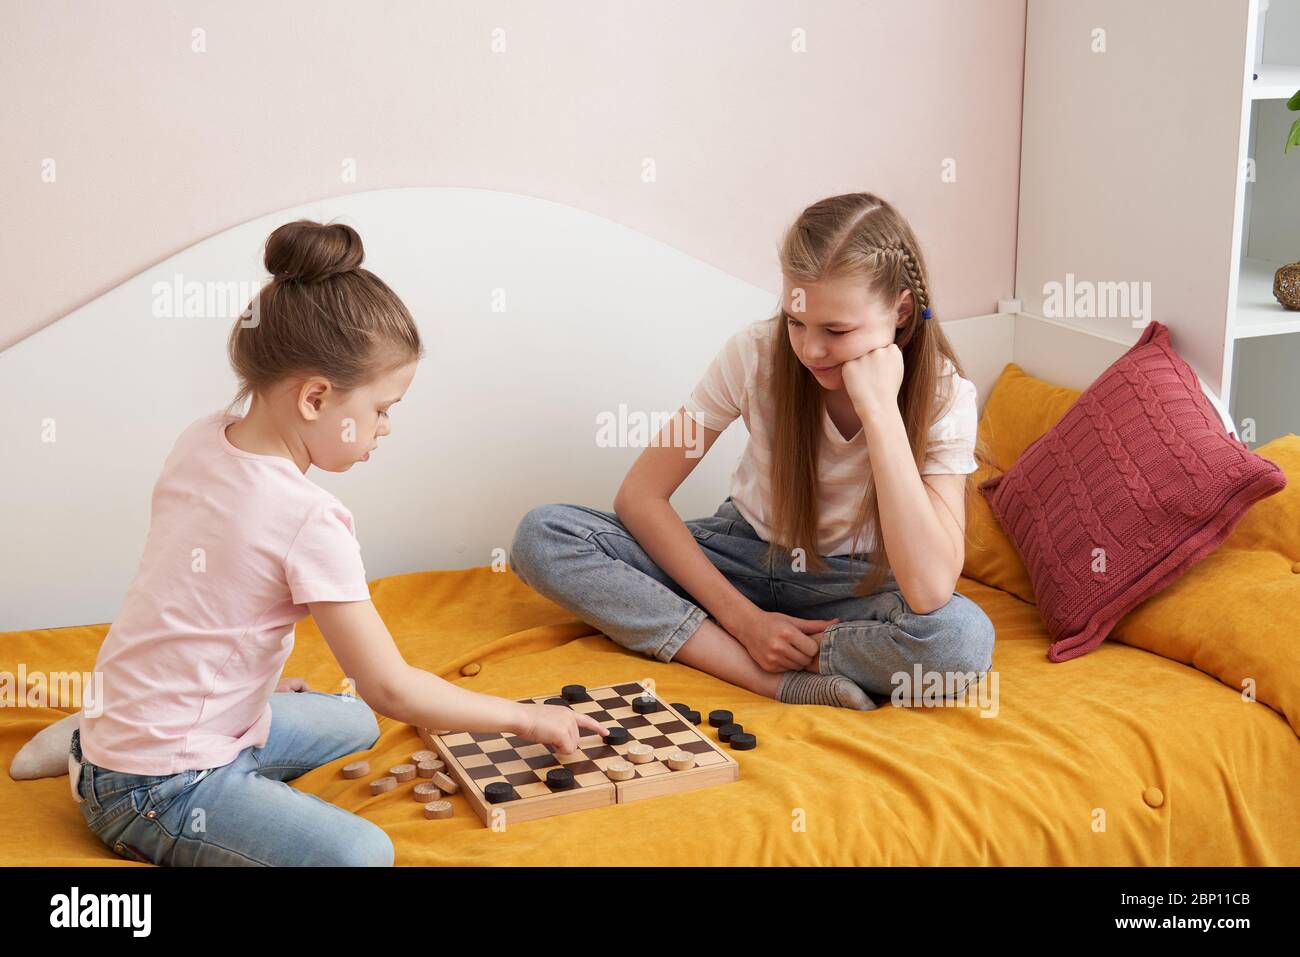 Играем с сестрой в карты на раздевание. Дети 2 сестры играют на раздевание. Две сестры лежа на полу играют в шашки. Во что можно поиграть с сестренкой. Брат с сестрой играли в игру на раздевание а потом потрахались.